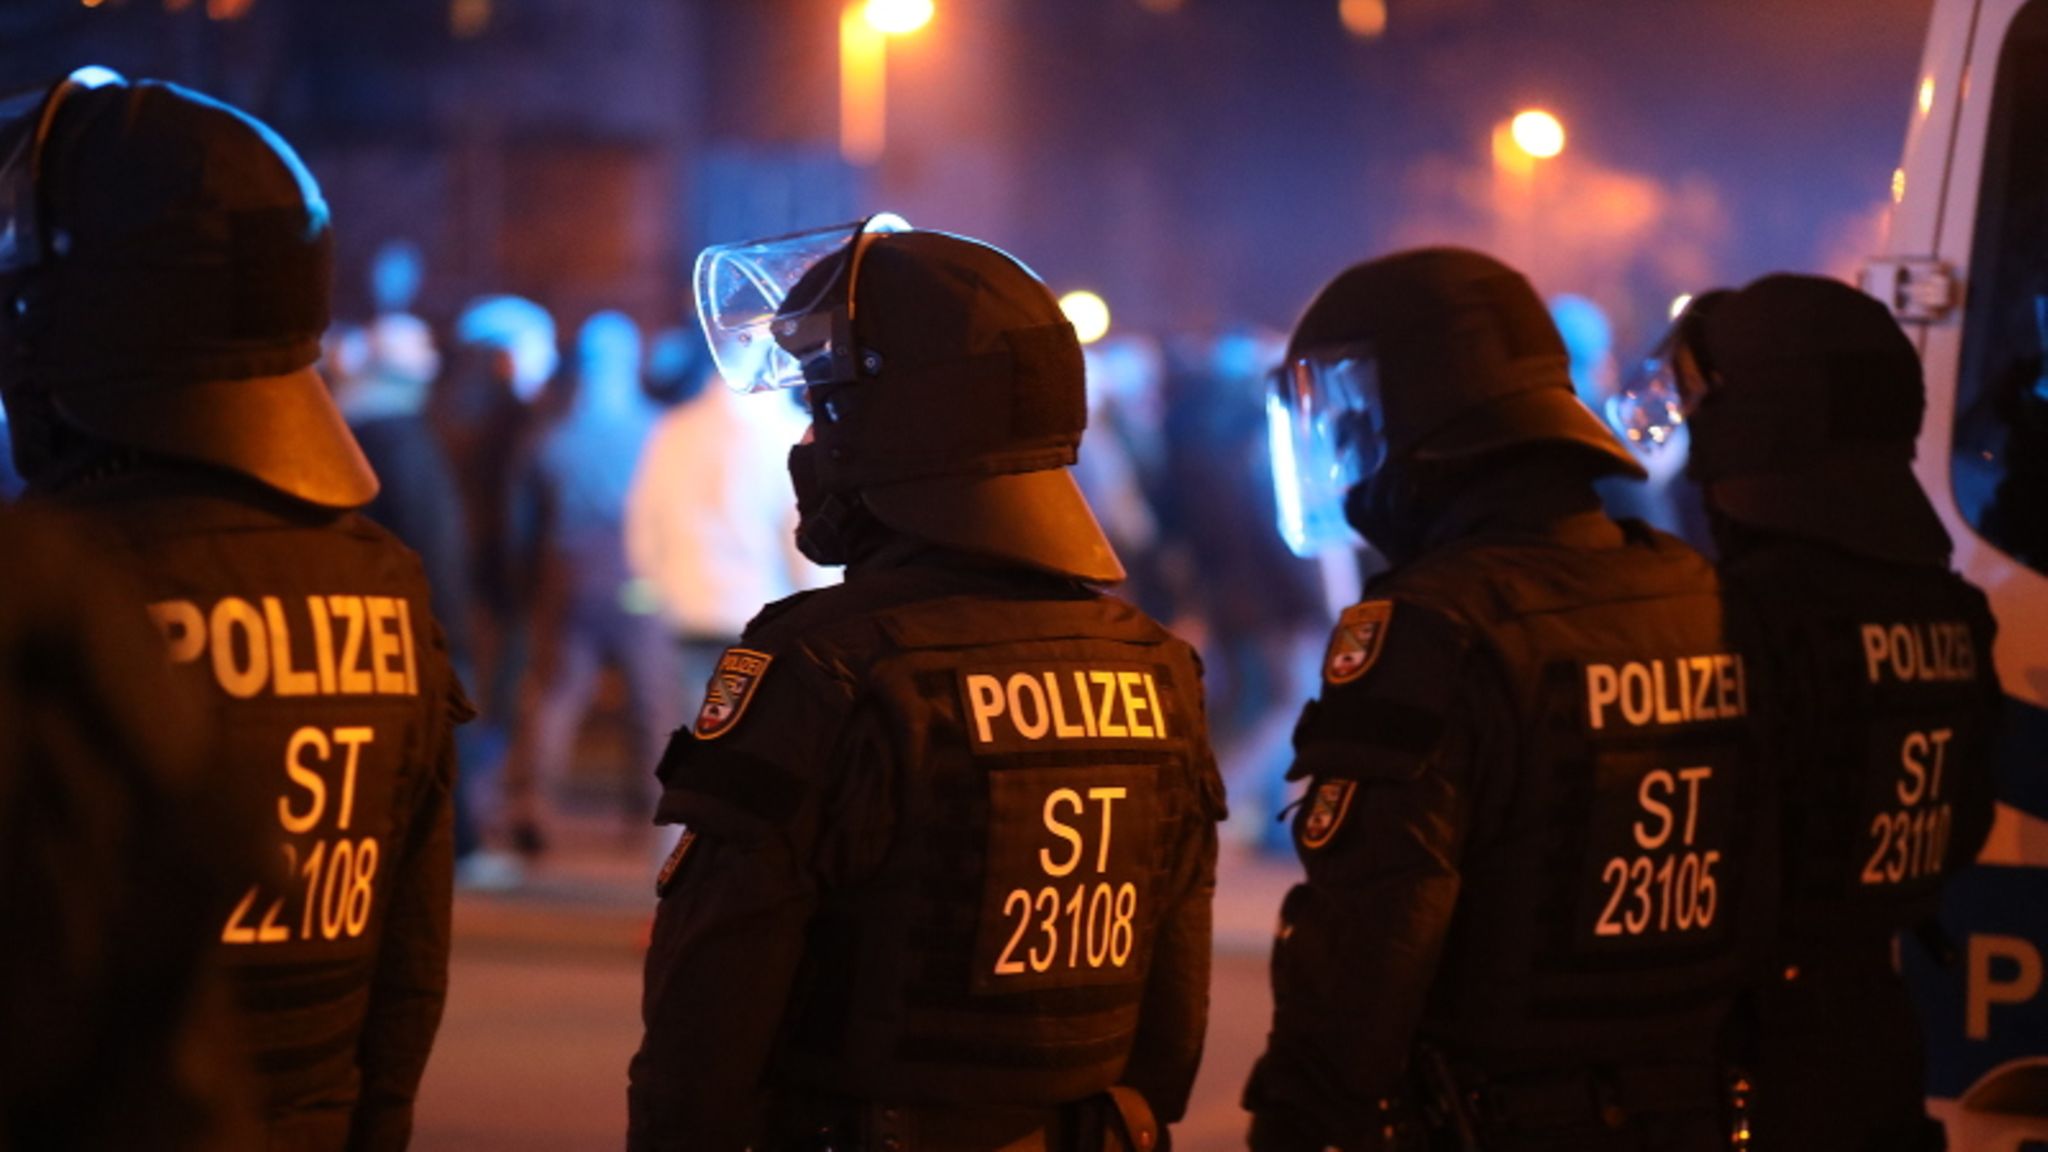 Innenausschuss ermittelt nach Querdenken-Demonstration gegen Polizisten